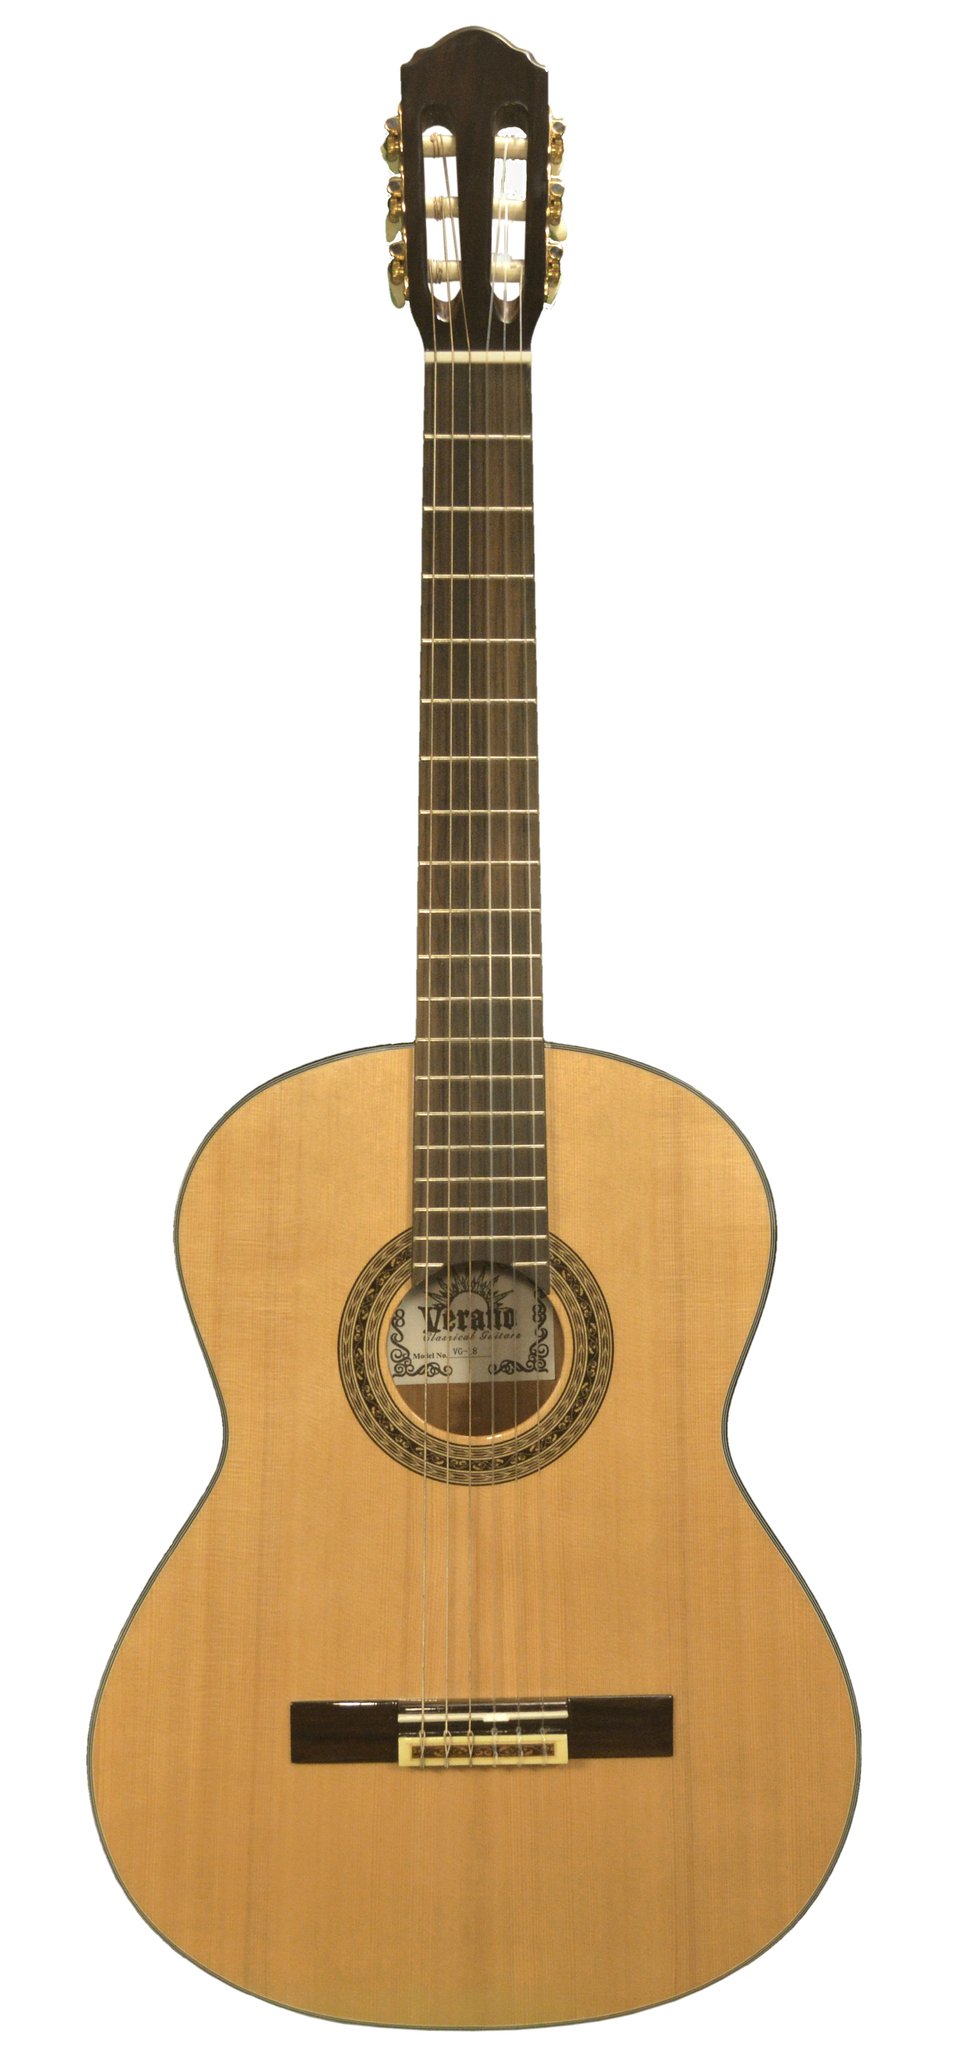 Verano Guitars VG-18 Cedar Mahogany Classical Guitar Guitars Verano   